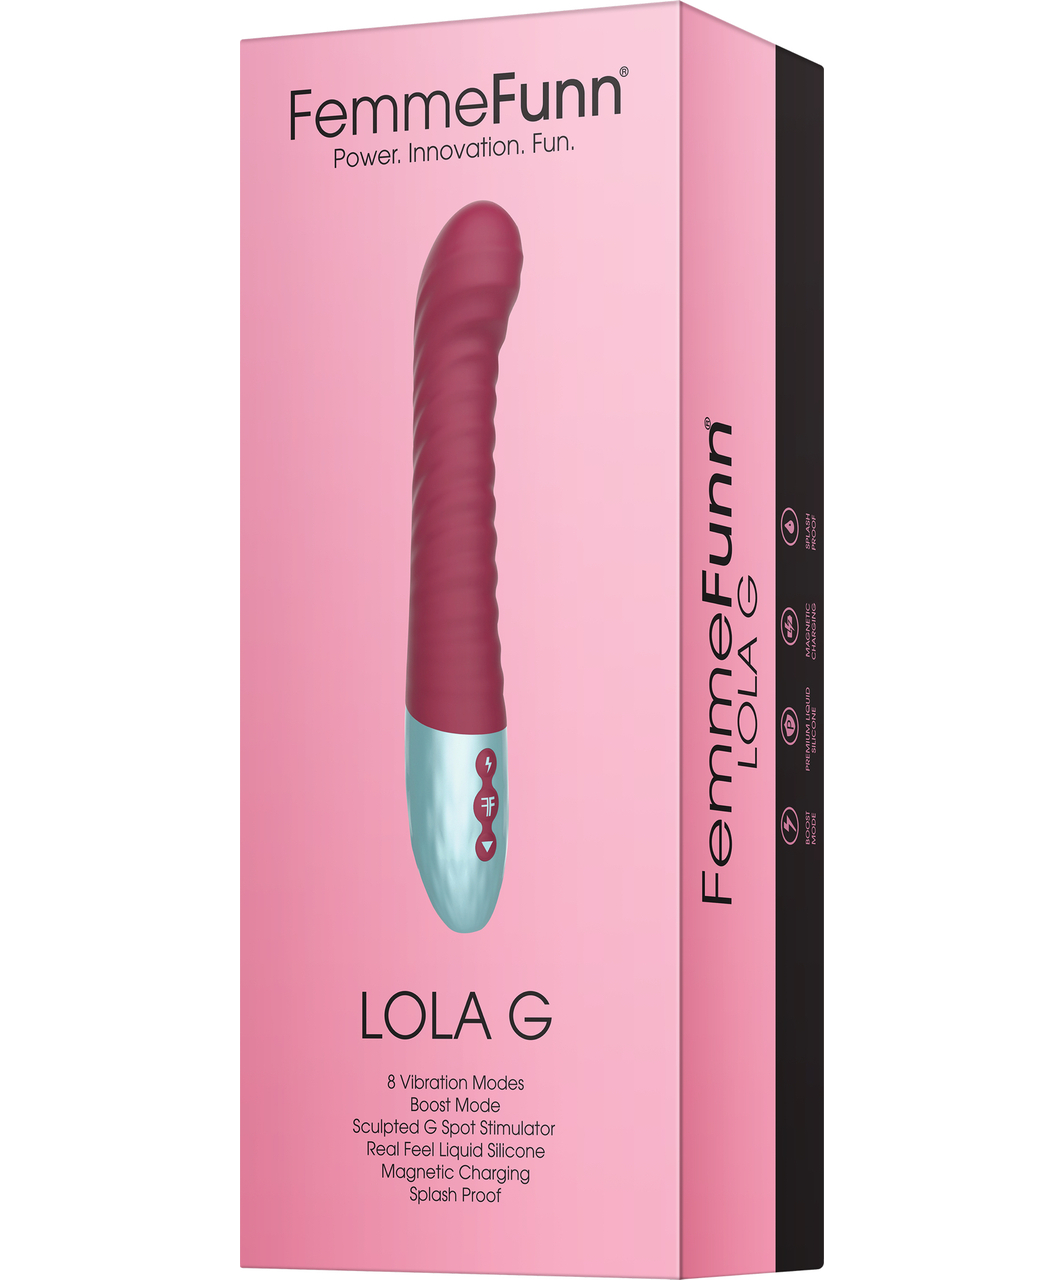 FemmeFunn Lola G vibrators